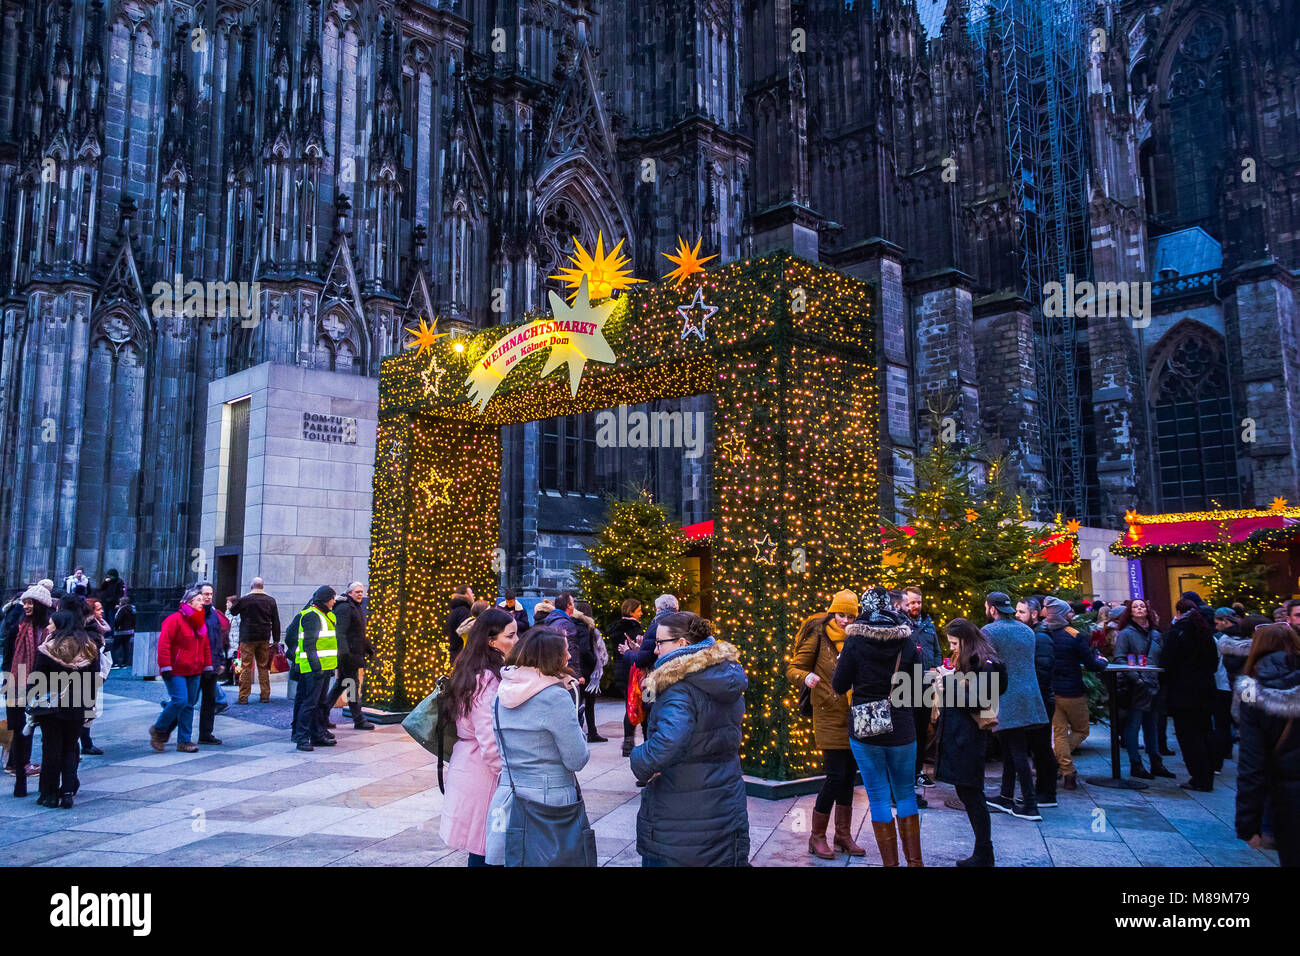 Cologne, Allemagne - 15 décembre 2017 : Marché de Noël près de l'église Dom à Cologne Allemagne dans le soleil du soir Banque D'Images